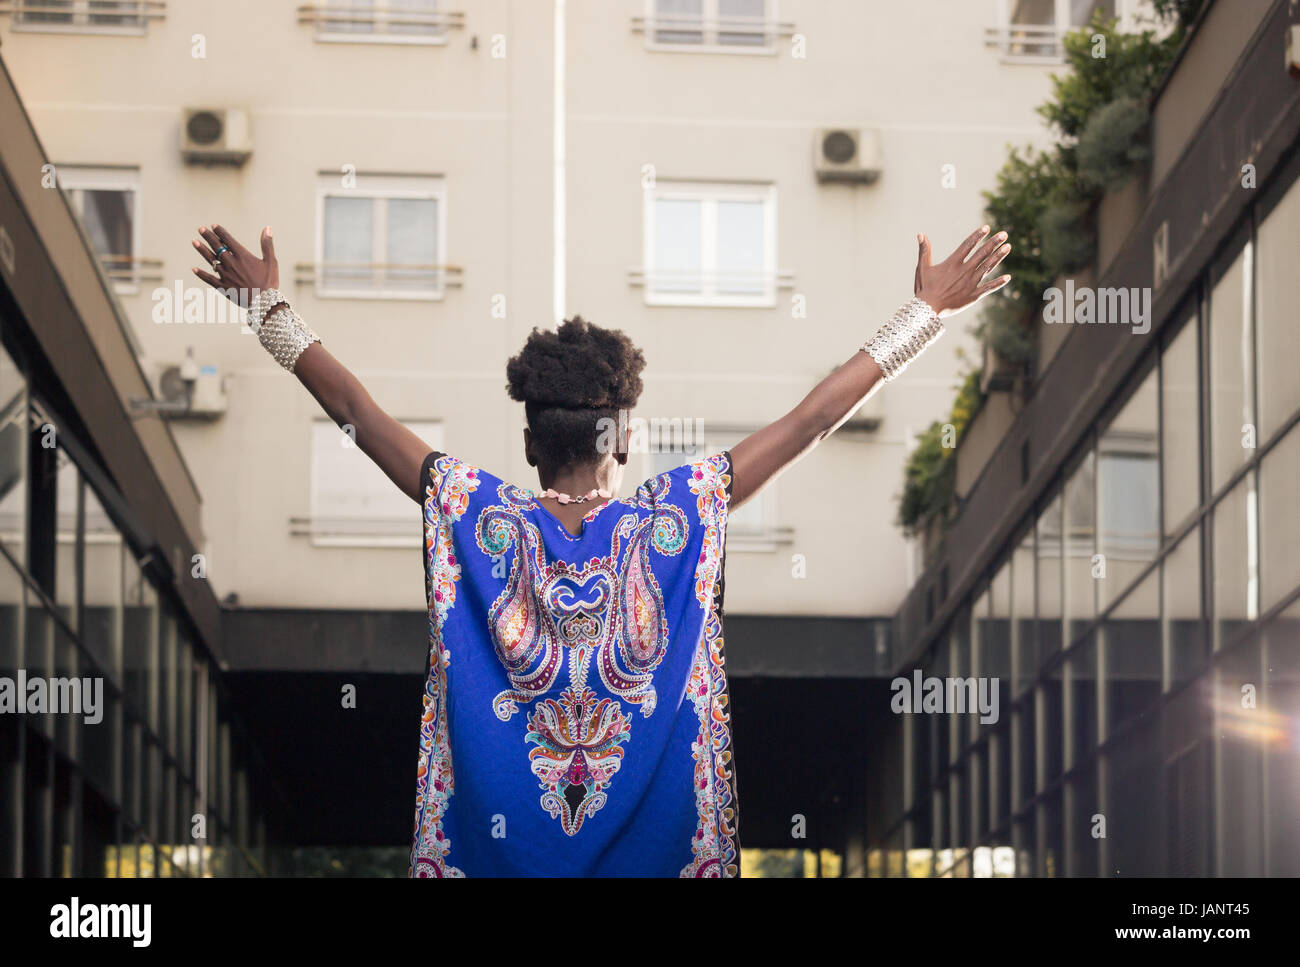 L'un, jeune adulte, black african american woman, 29 ans, bras outstreched, haut du corps tourné, zone urbaine, les bâtiments extérieurs, low angle view, pis Banque D'Images